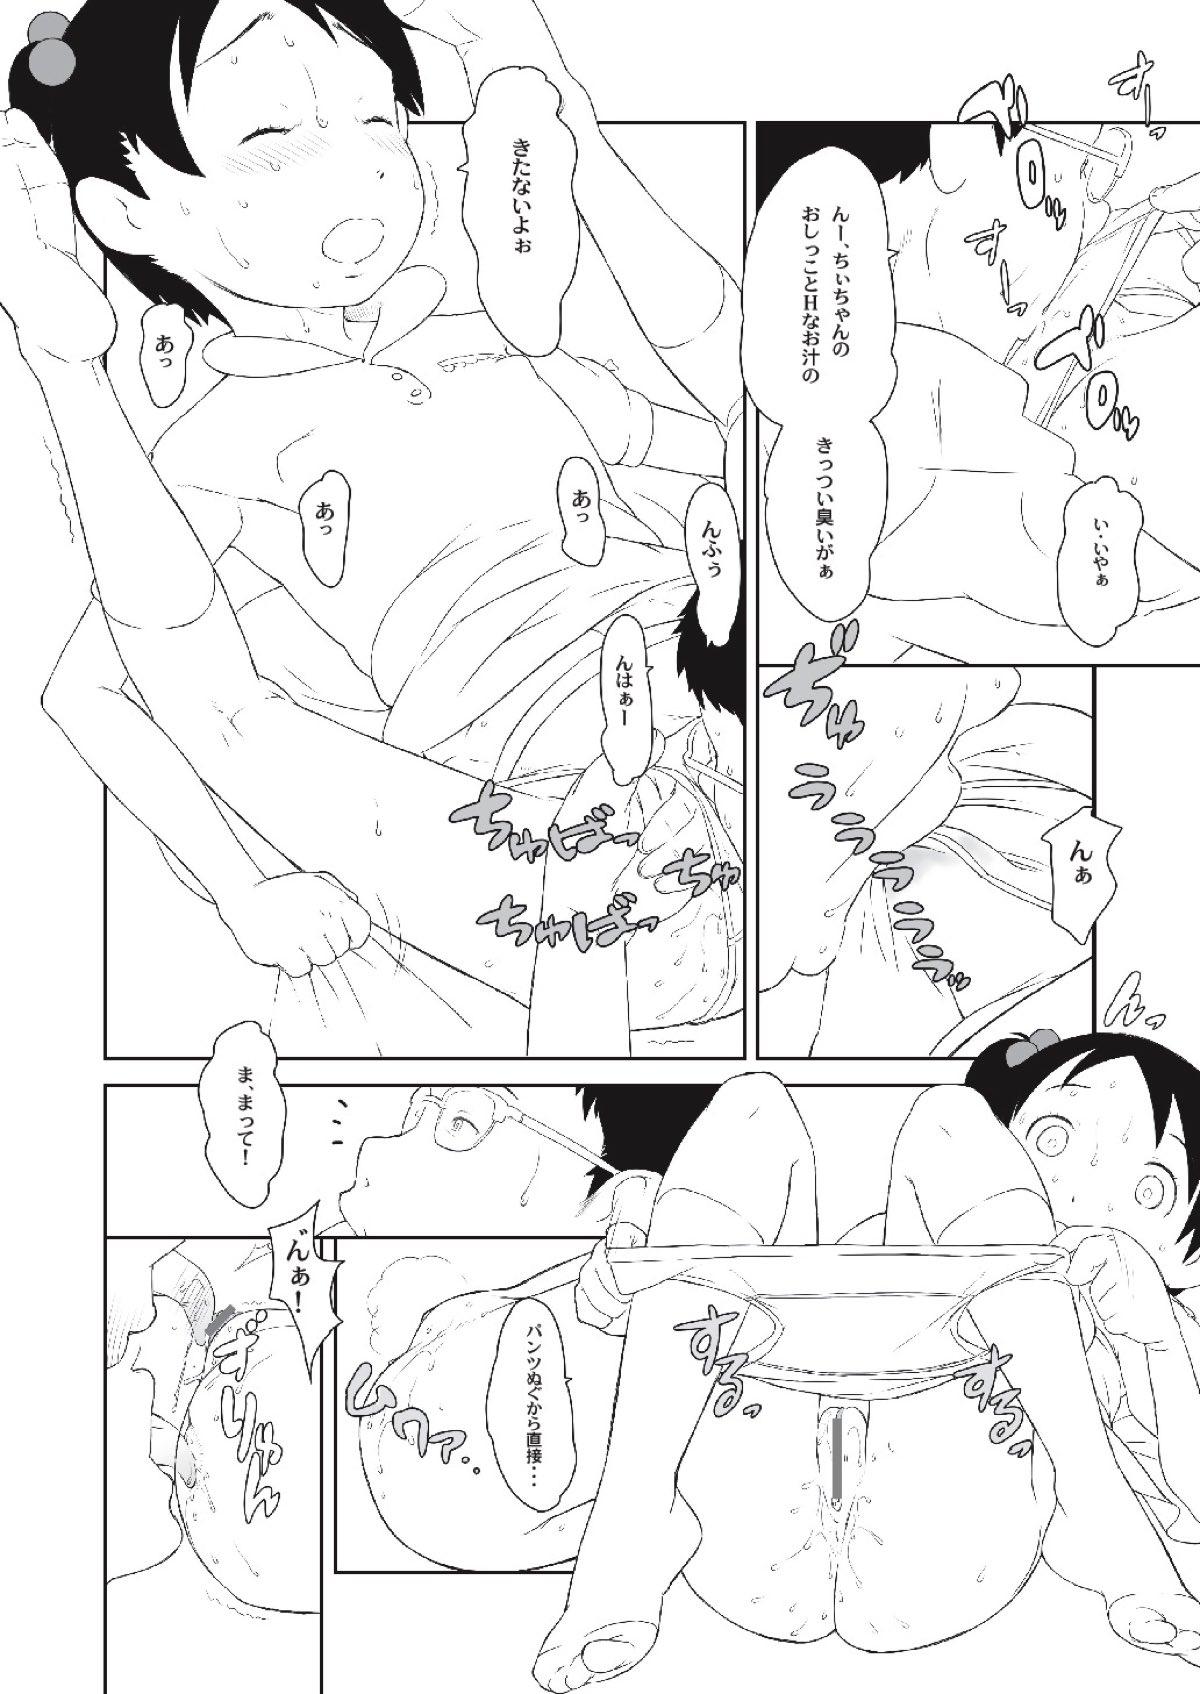 Perfect Body Chii-chan no Oshare Erabi - Ichigo mashimaro Swingers - Page 12